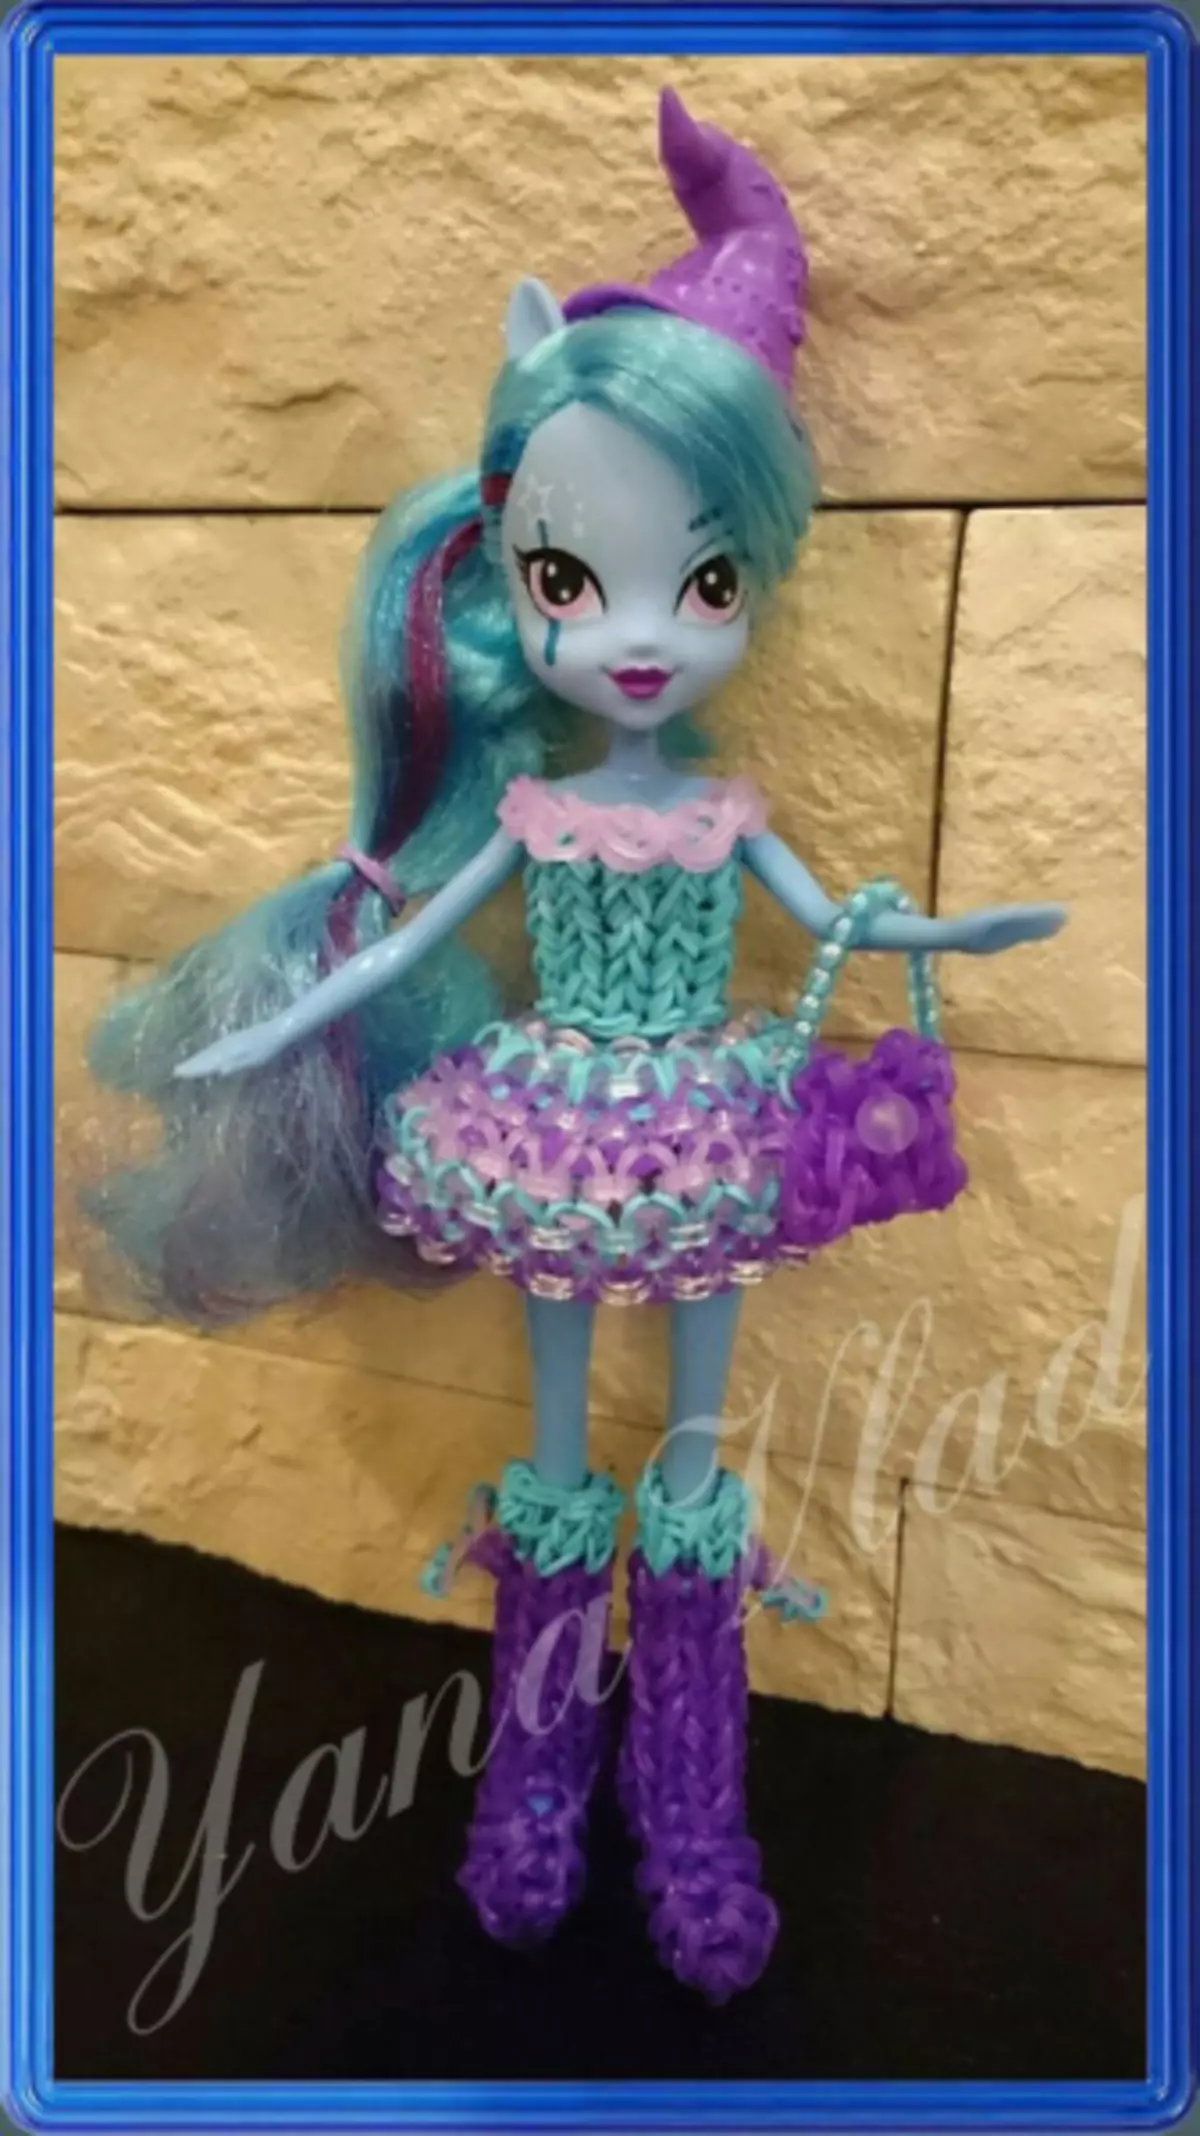 Ukuluka kwirabha: iimpahla ze-dolls barbie kunye ne-monster ephezulu nevidiyo